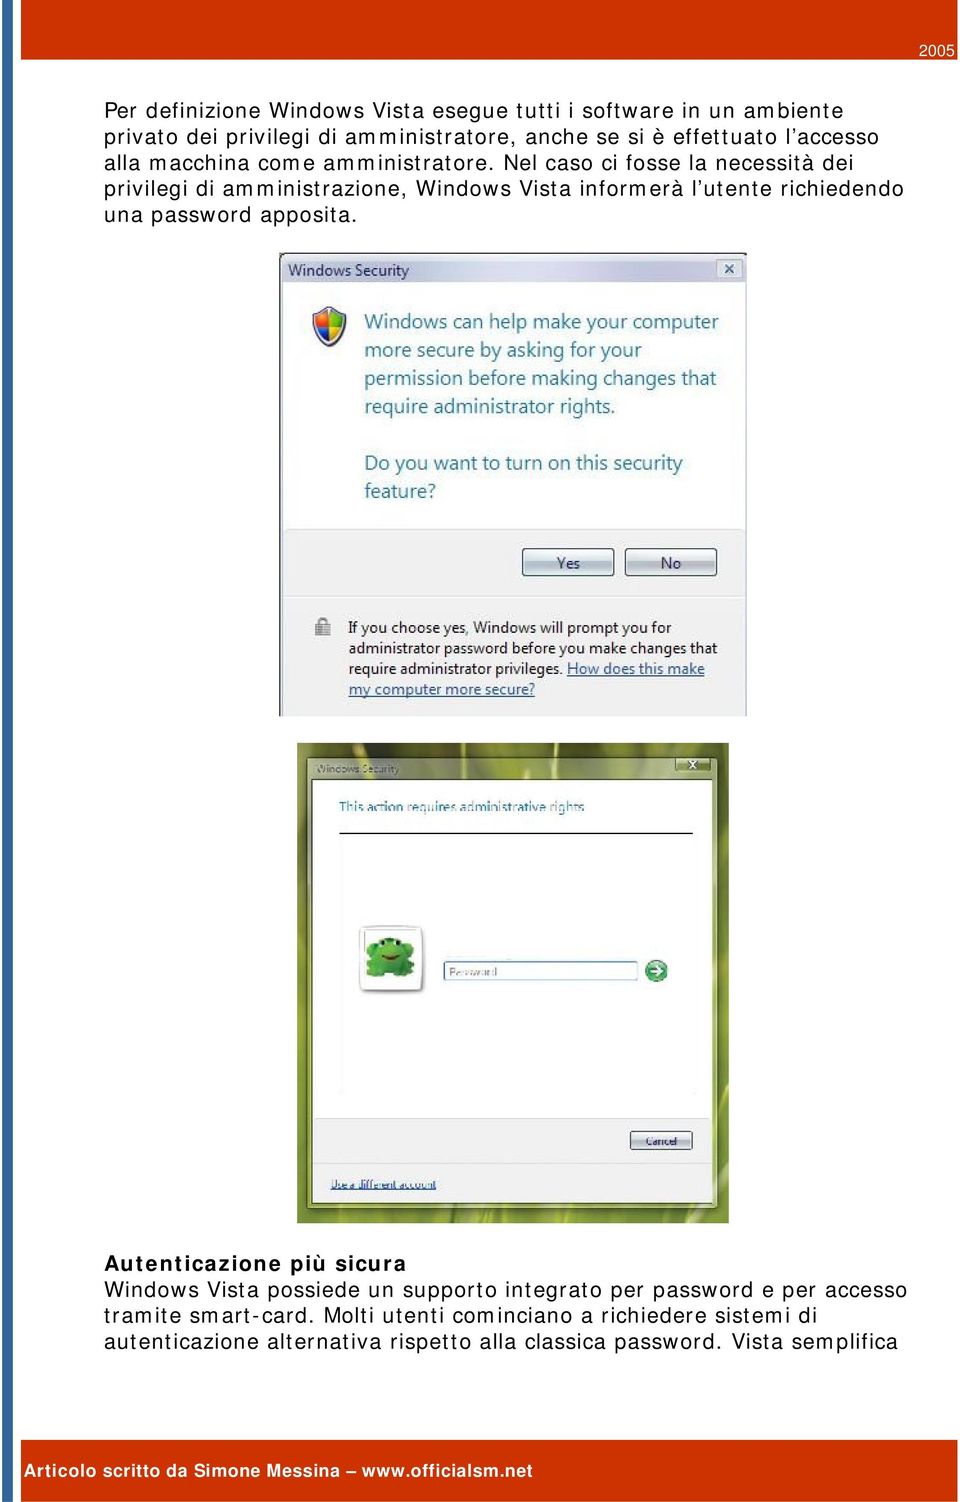 Nel caso ci fosse la necessità dei privilegi di amministrazione, Windows Vista informerà l utente richiedendo una password apposita.